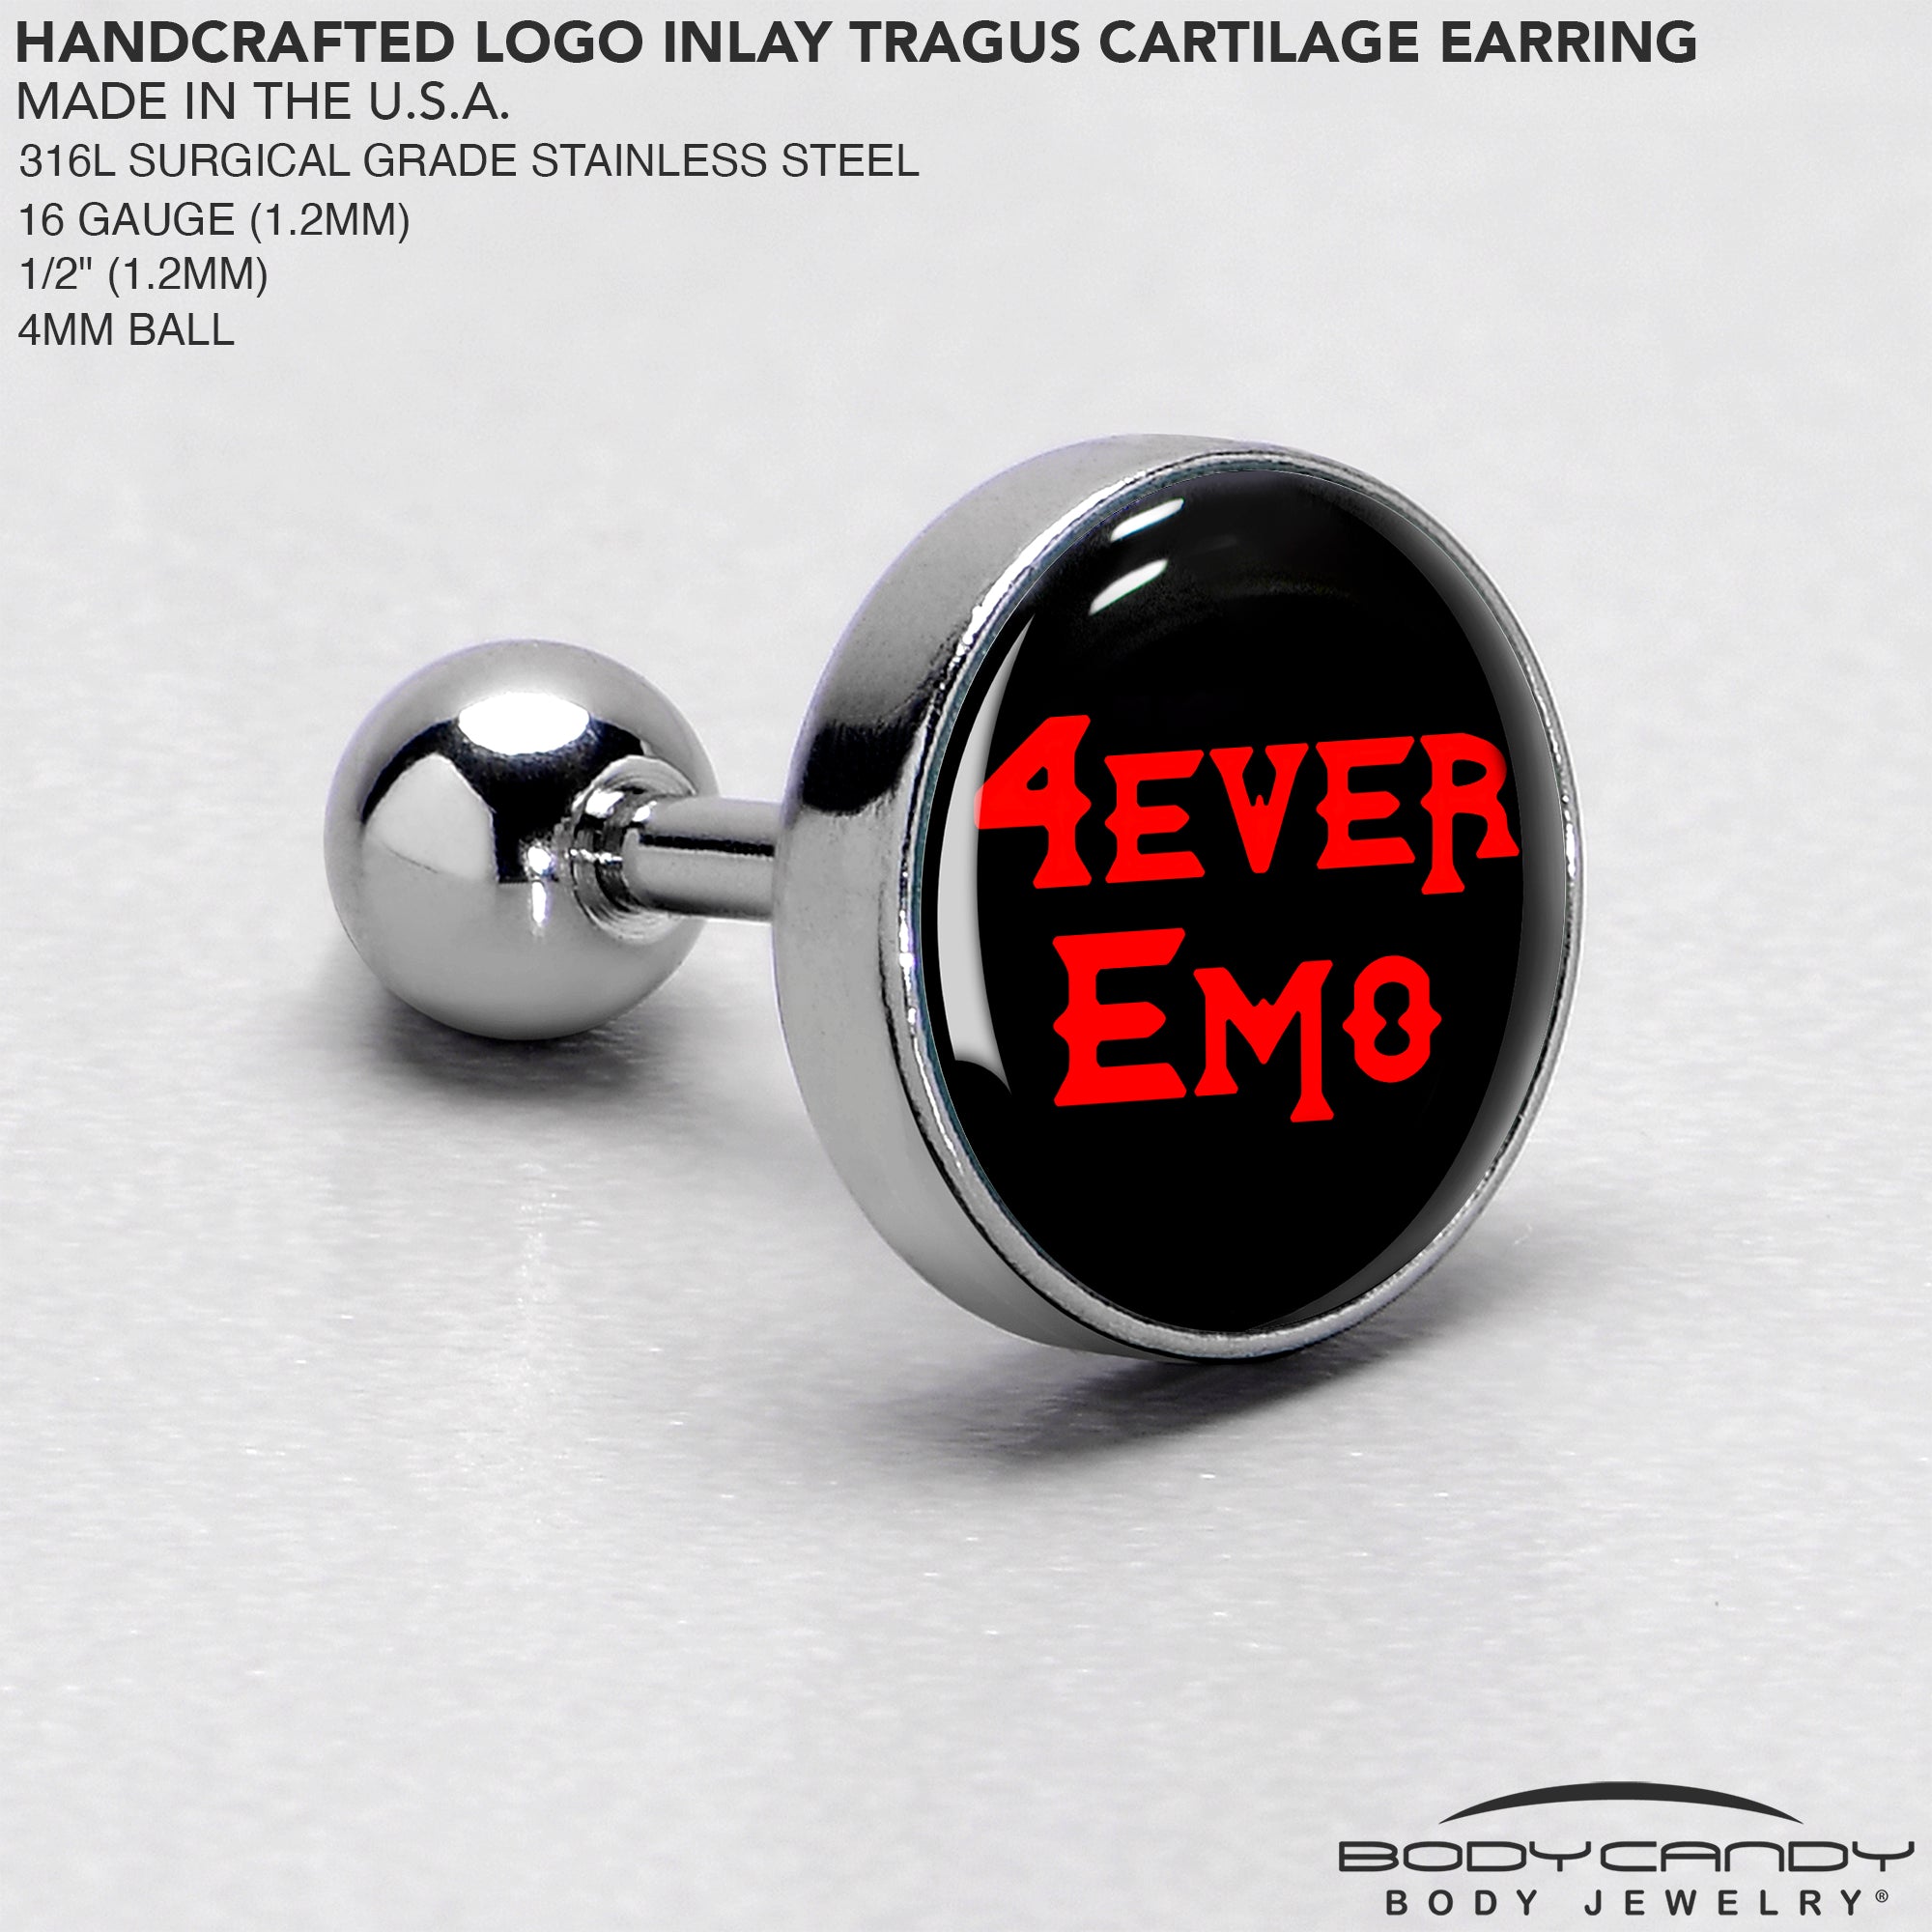 16 Gauge 1/4 Black Red 4 Ever Emo Tragus Cartilage Earring